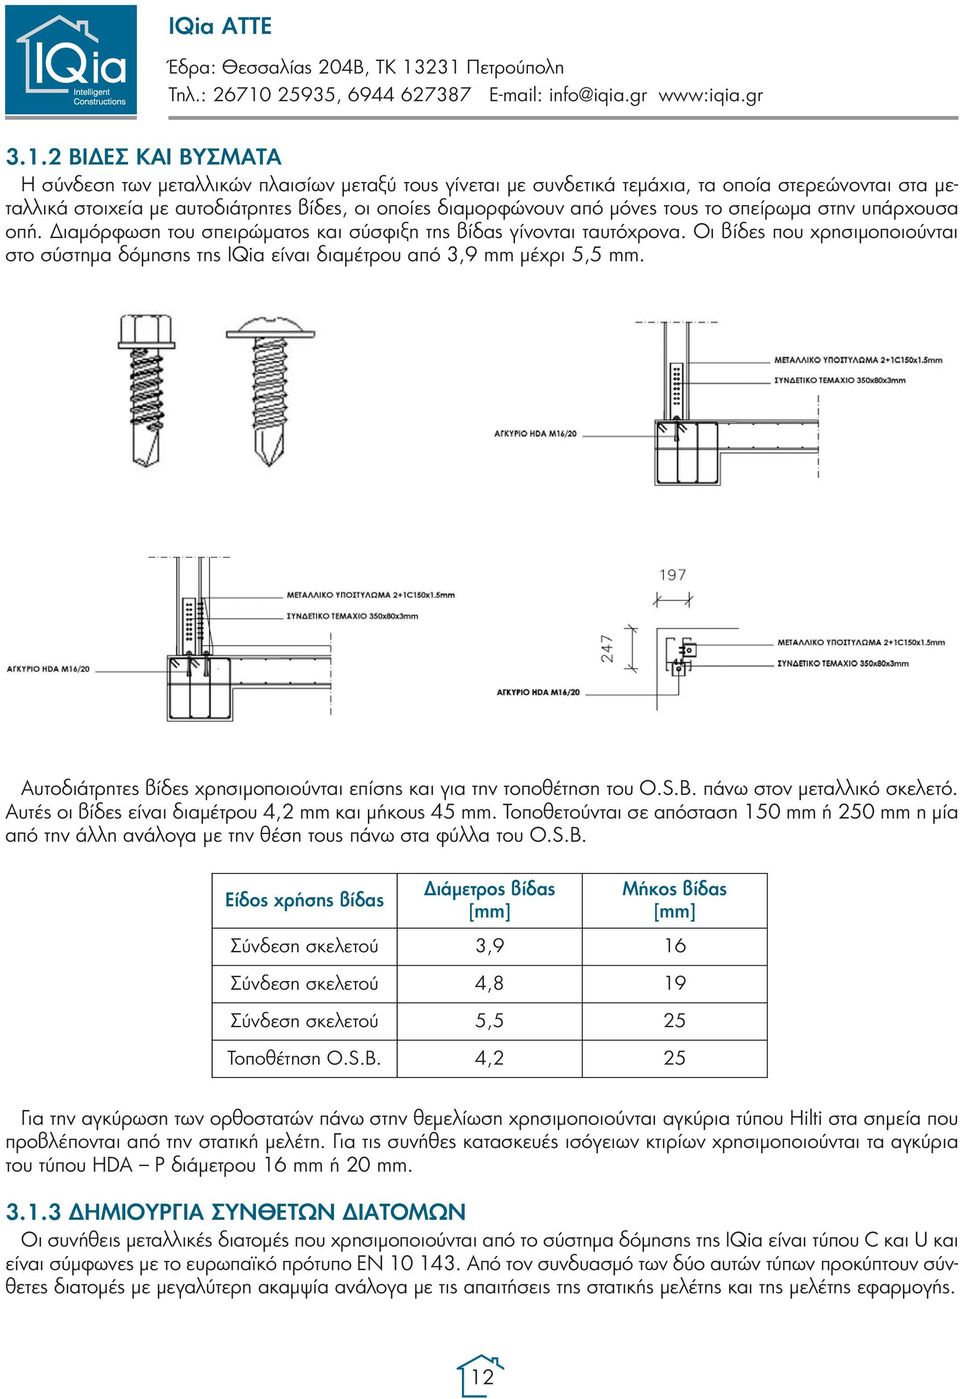 Οι βίδες που χρησιμοποιούνται στο σύστημα δόμησης της IQia είναι διαμέτρου από 3,9 mm μέχρι 5,5 mm. Αυτοδιάτρητες βίδες χρησιμοποιούνται επίσης και για την τοποθέτηση του O.S.B.